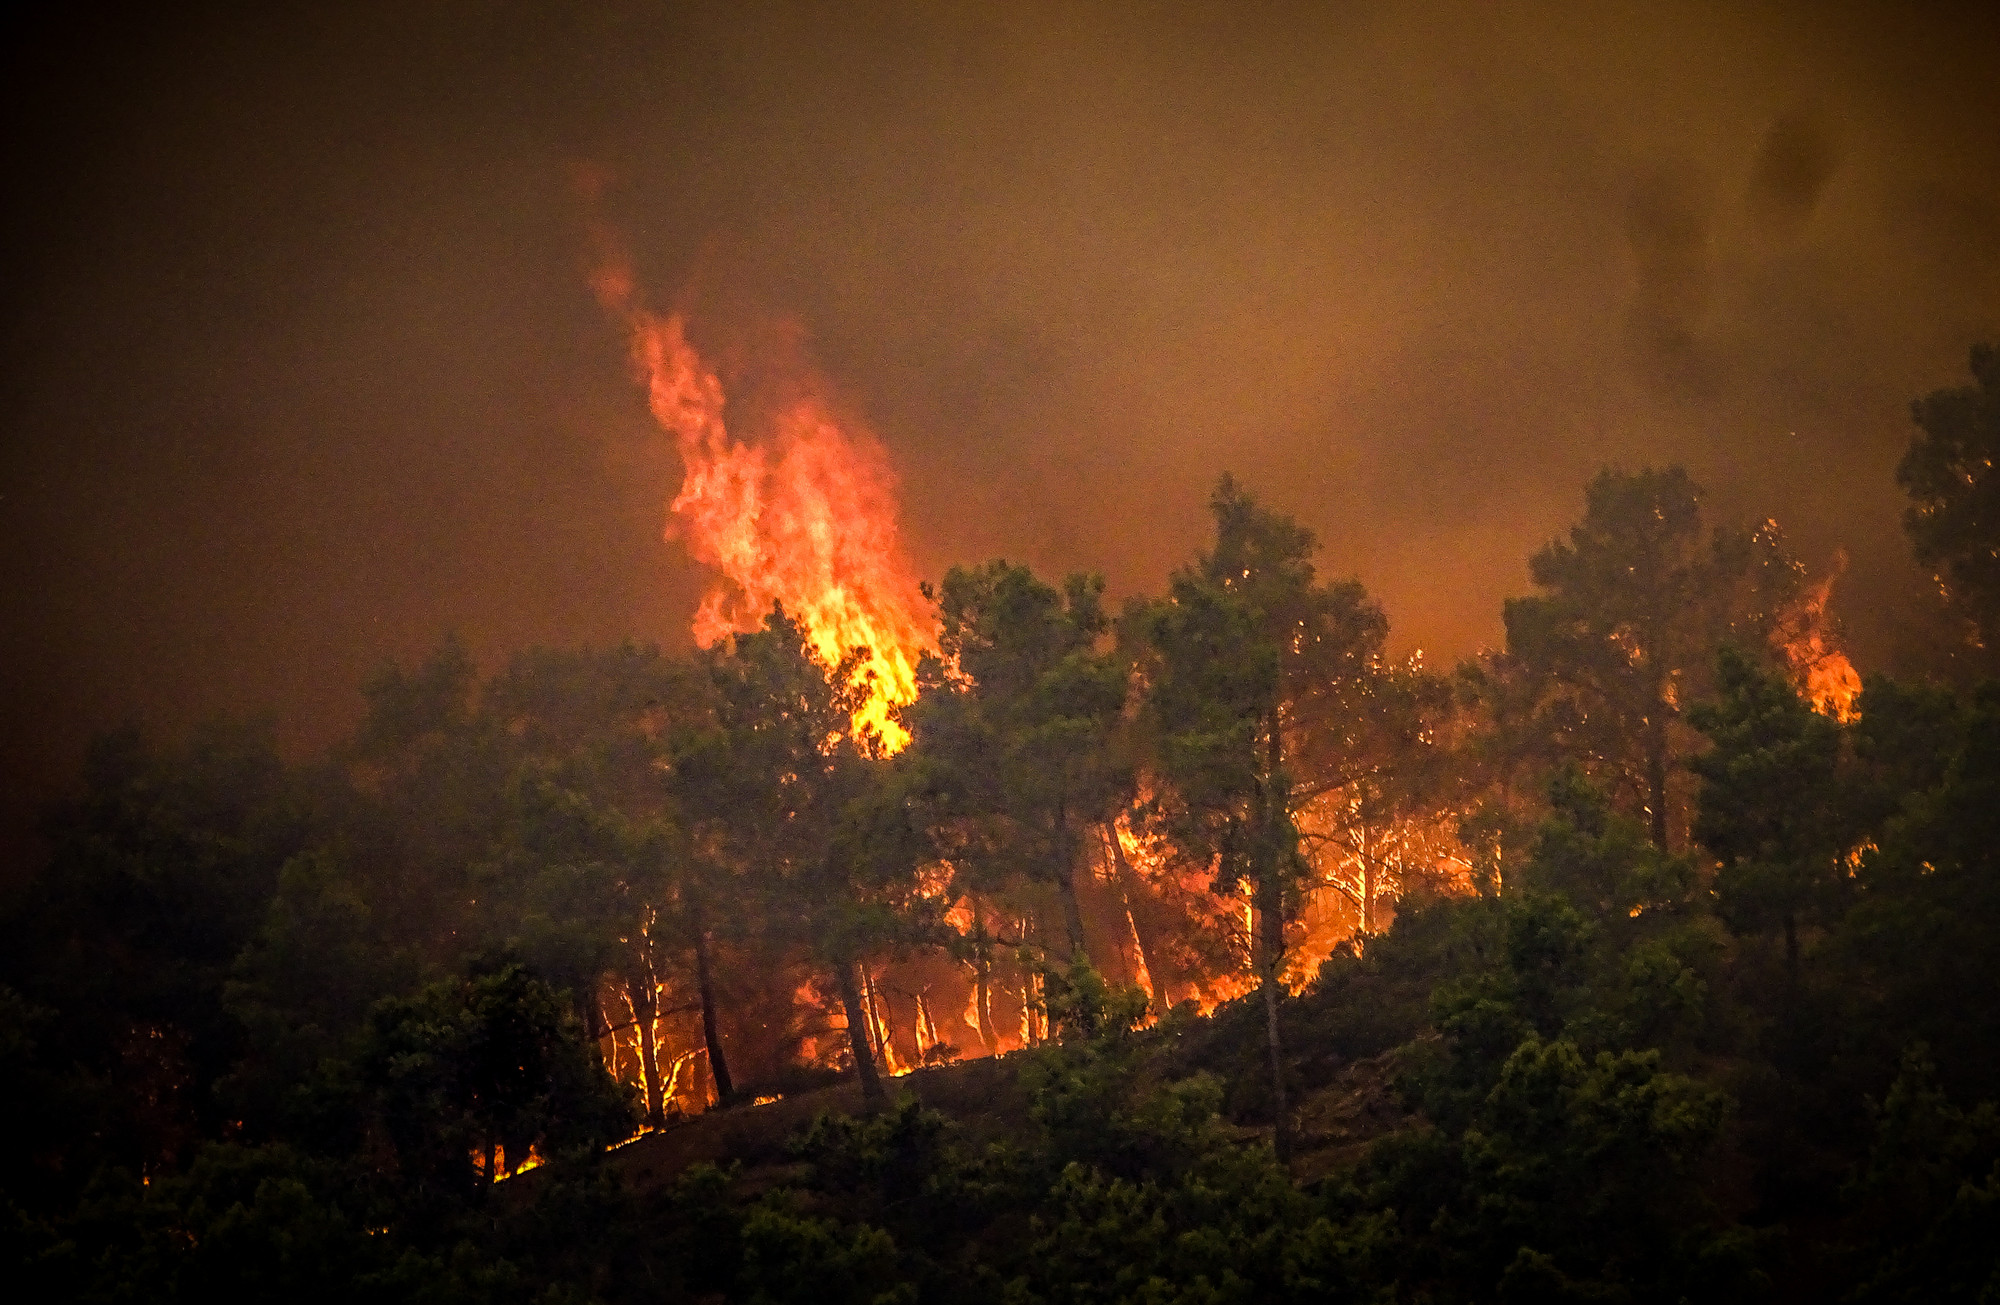 A Görögországban pusztító erdőtüzek közel négy budapestnyi területet perzseltek fel júliusban